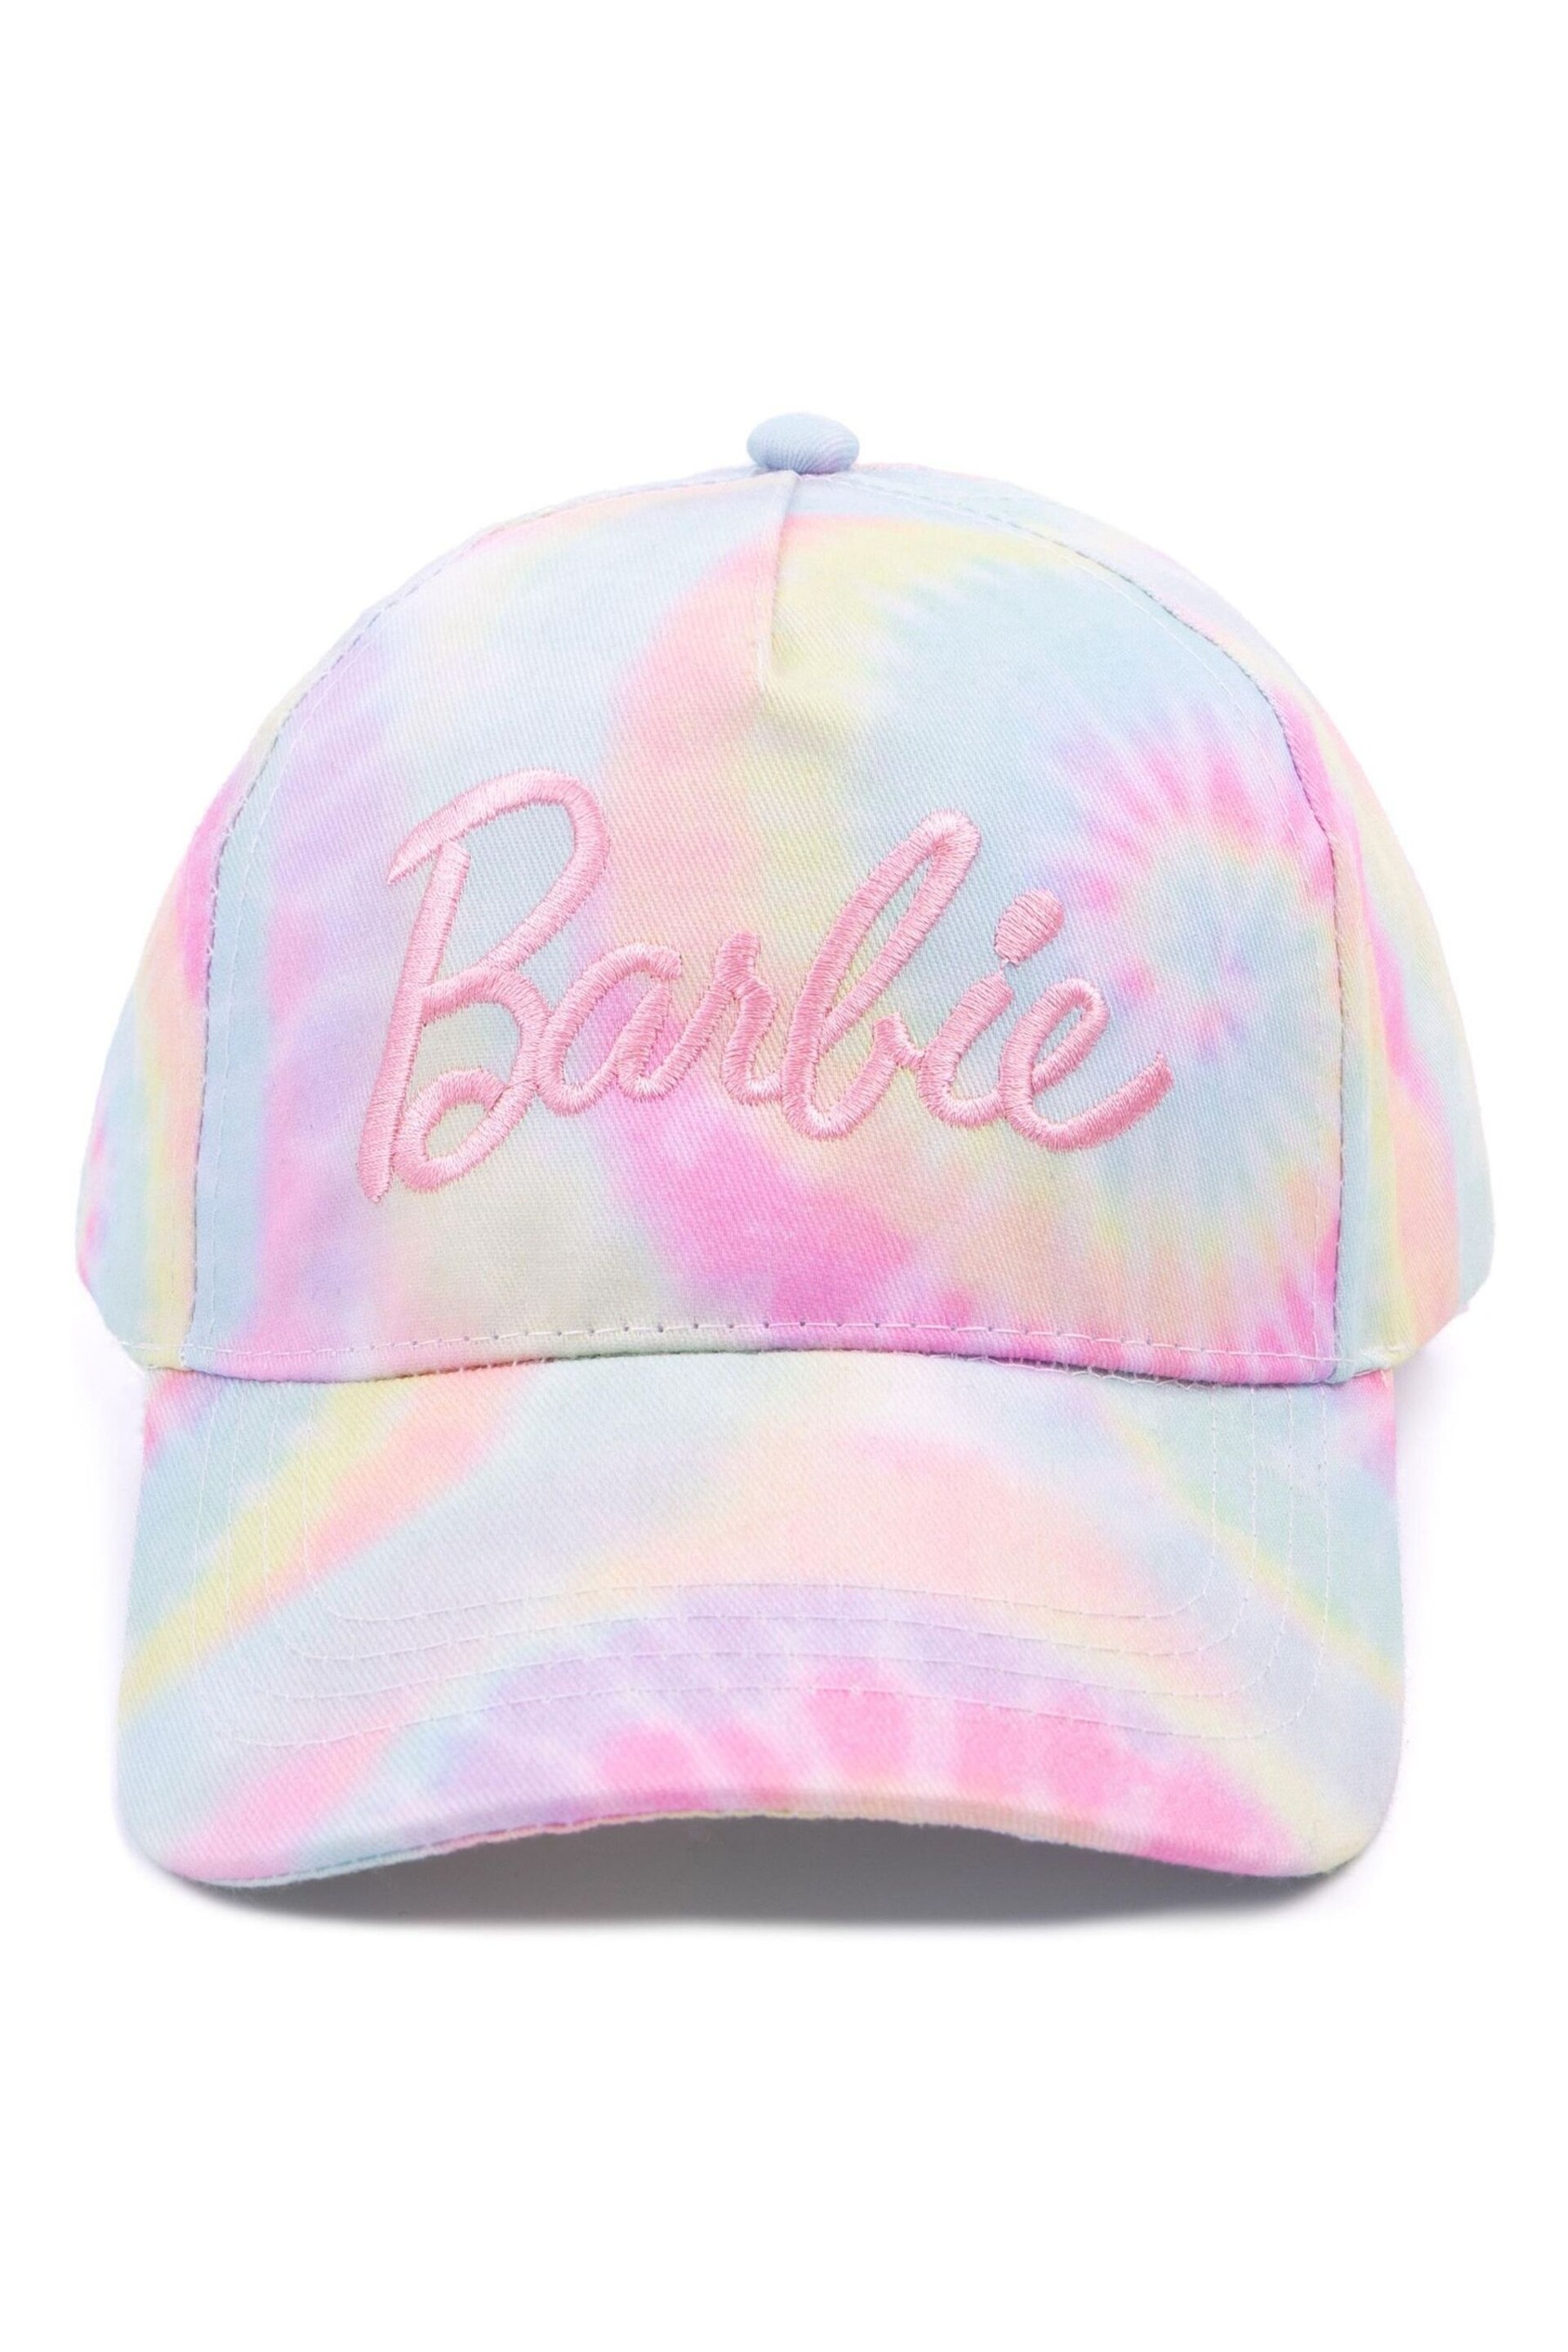 Vanilla Underground Pink Girls Tie-Dye Barbie Cap - Image 4 of 8